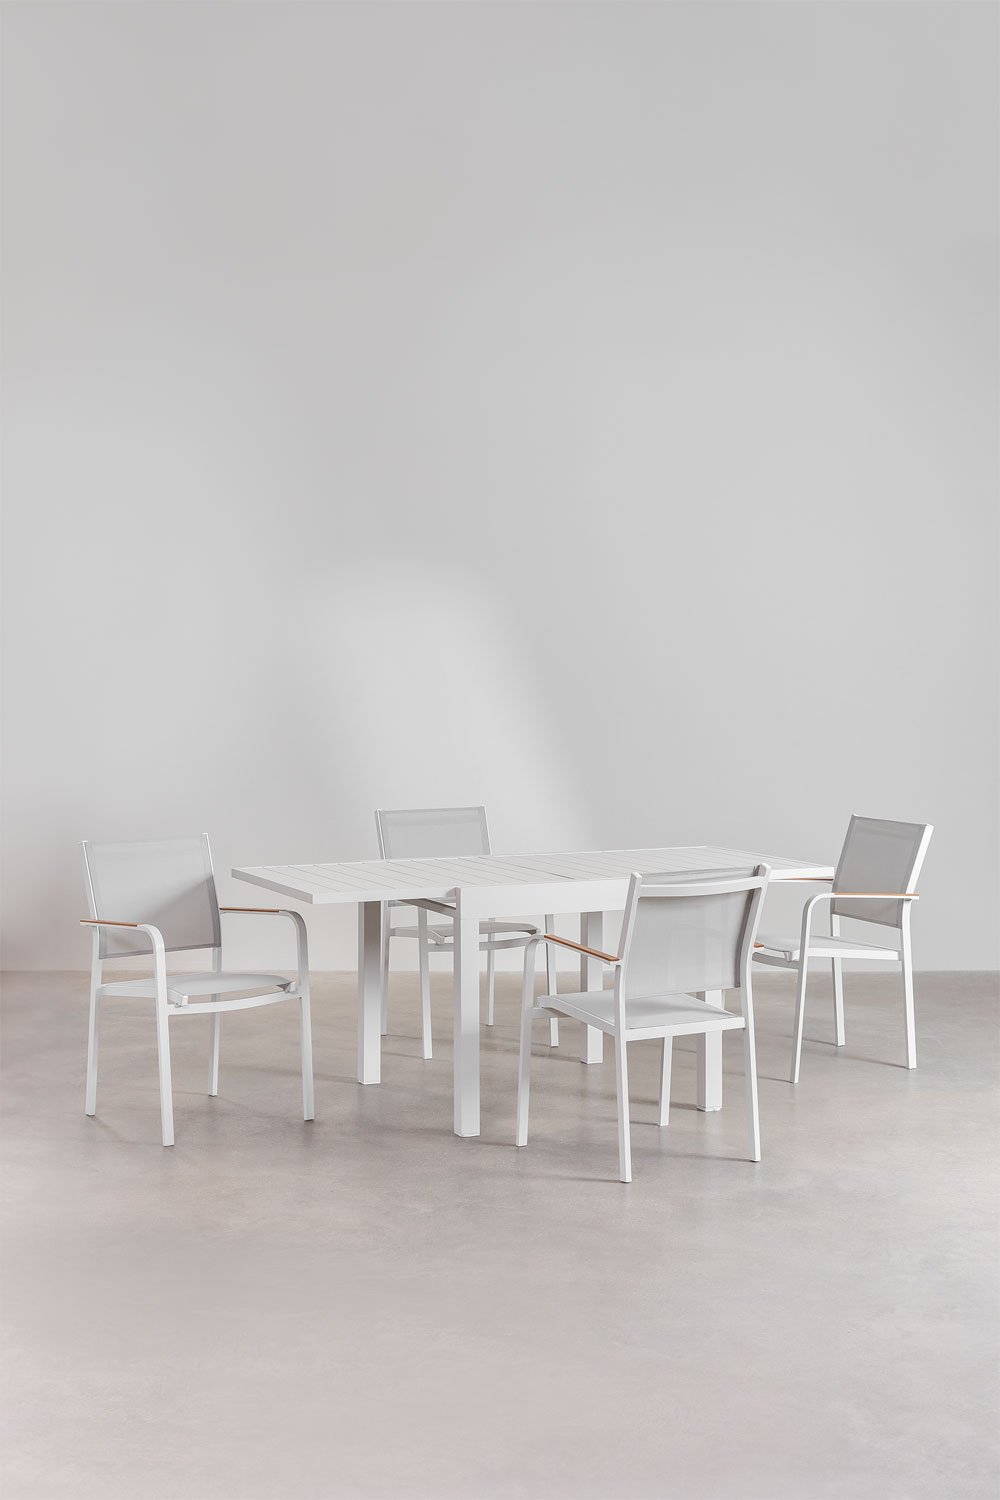 Set aus ausziehbarem rechteckigem Tisch aus Aluminium (90-180x90 cm) Starmi und 4 stapelbaren Gartenstühlen aus Aluminium Archer, Galeriebild 1